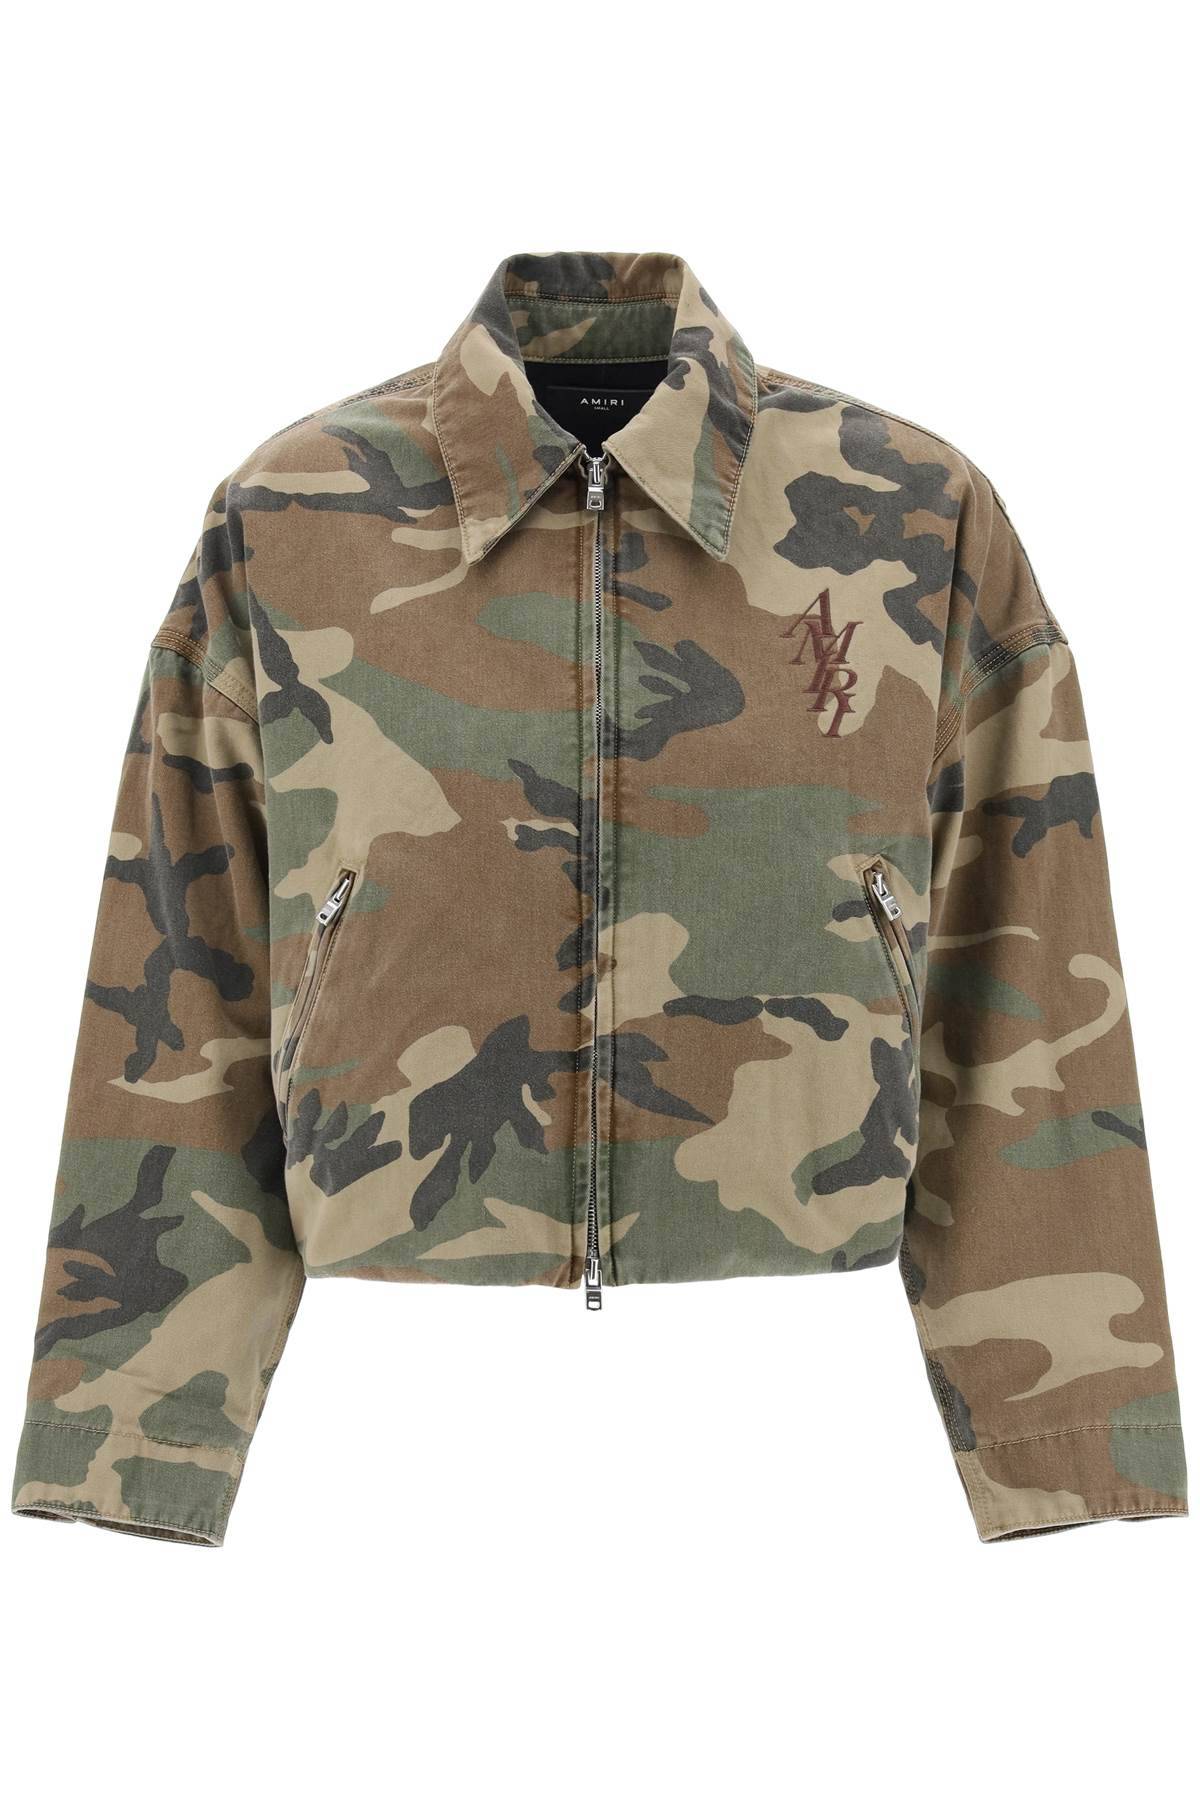 Amiri AMIRI "workwear style camouflage jacket